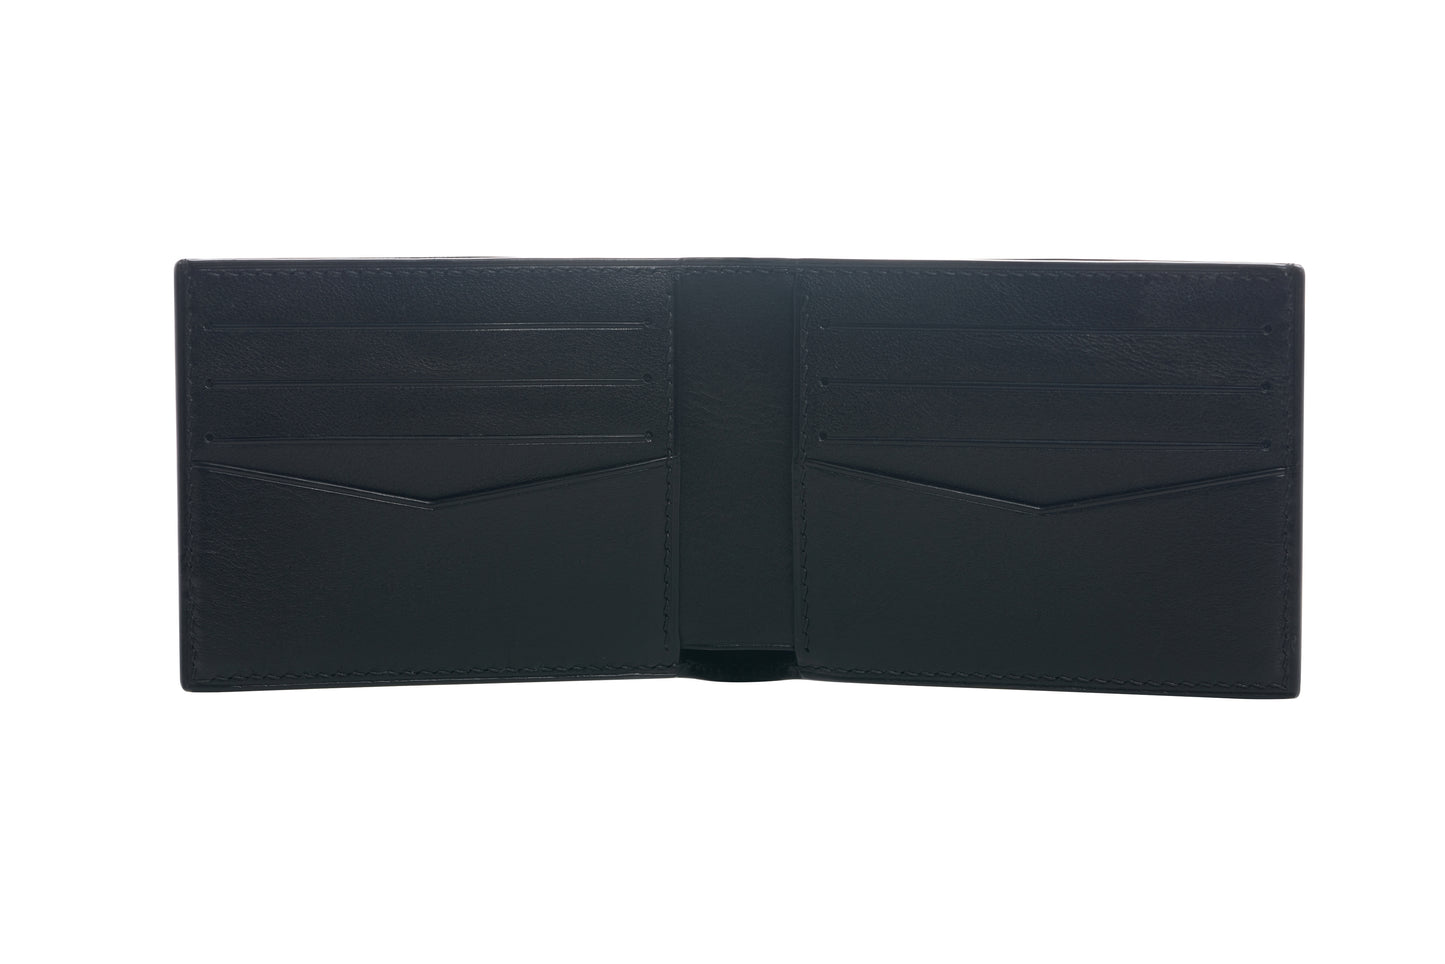 Vegetable Tanned Leather Wallet - Black - 8-Pocket Slim